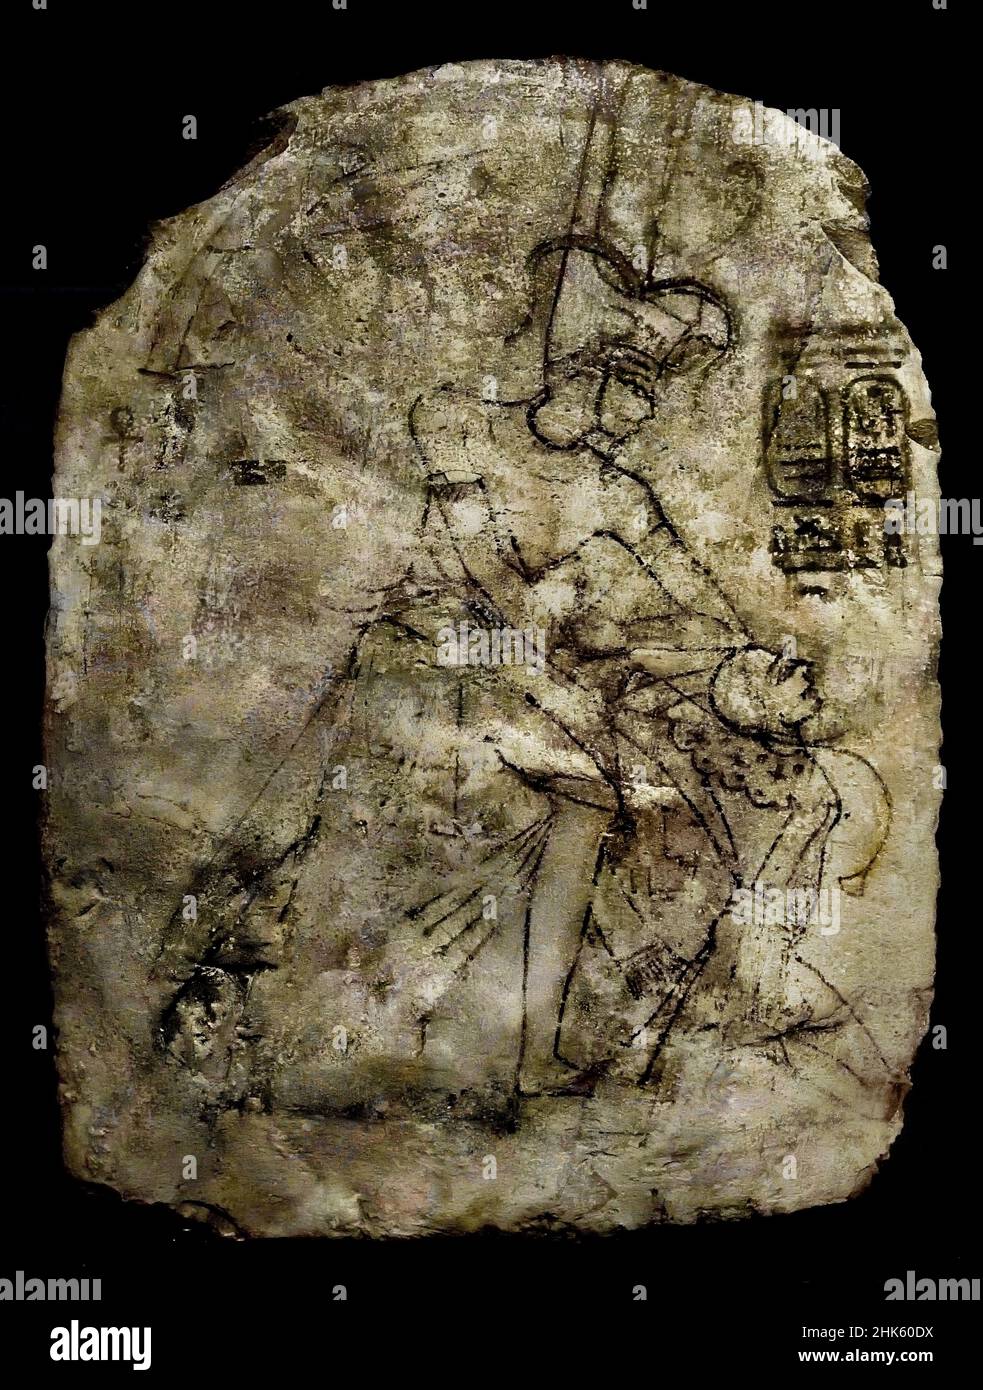 Stela, die Sethy I und einen Wesir darstellt, der Amenhotep I und Ahmose Nefertari anbetend, Stein/Kalkstein, 56 x 75,5 x 14 cm, 1279–1213 v. Chr., New Kingdom, 19th, neunzehnte Dynastie, Ramesses II, Deir el-Medina, Ägypten (Museo Egizio di Torino Italien) Stockfoto